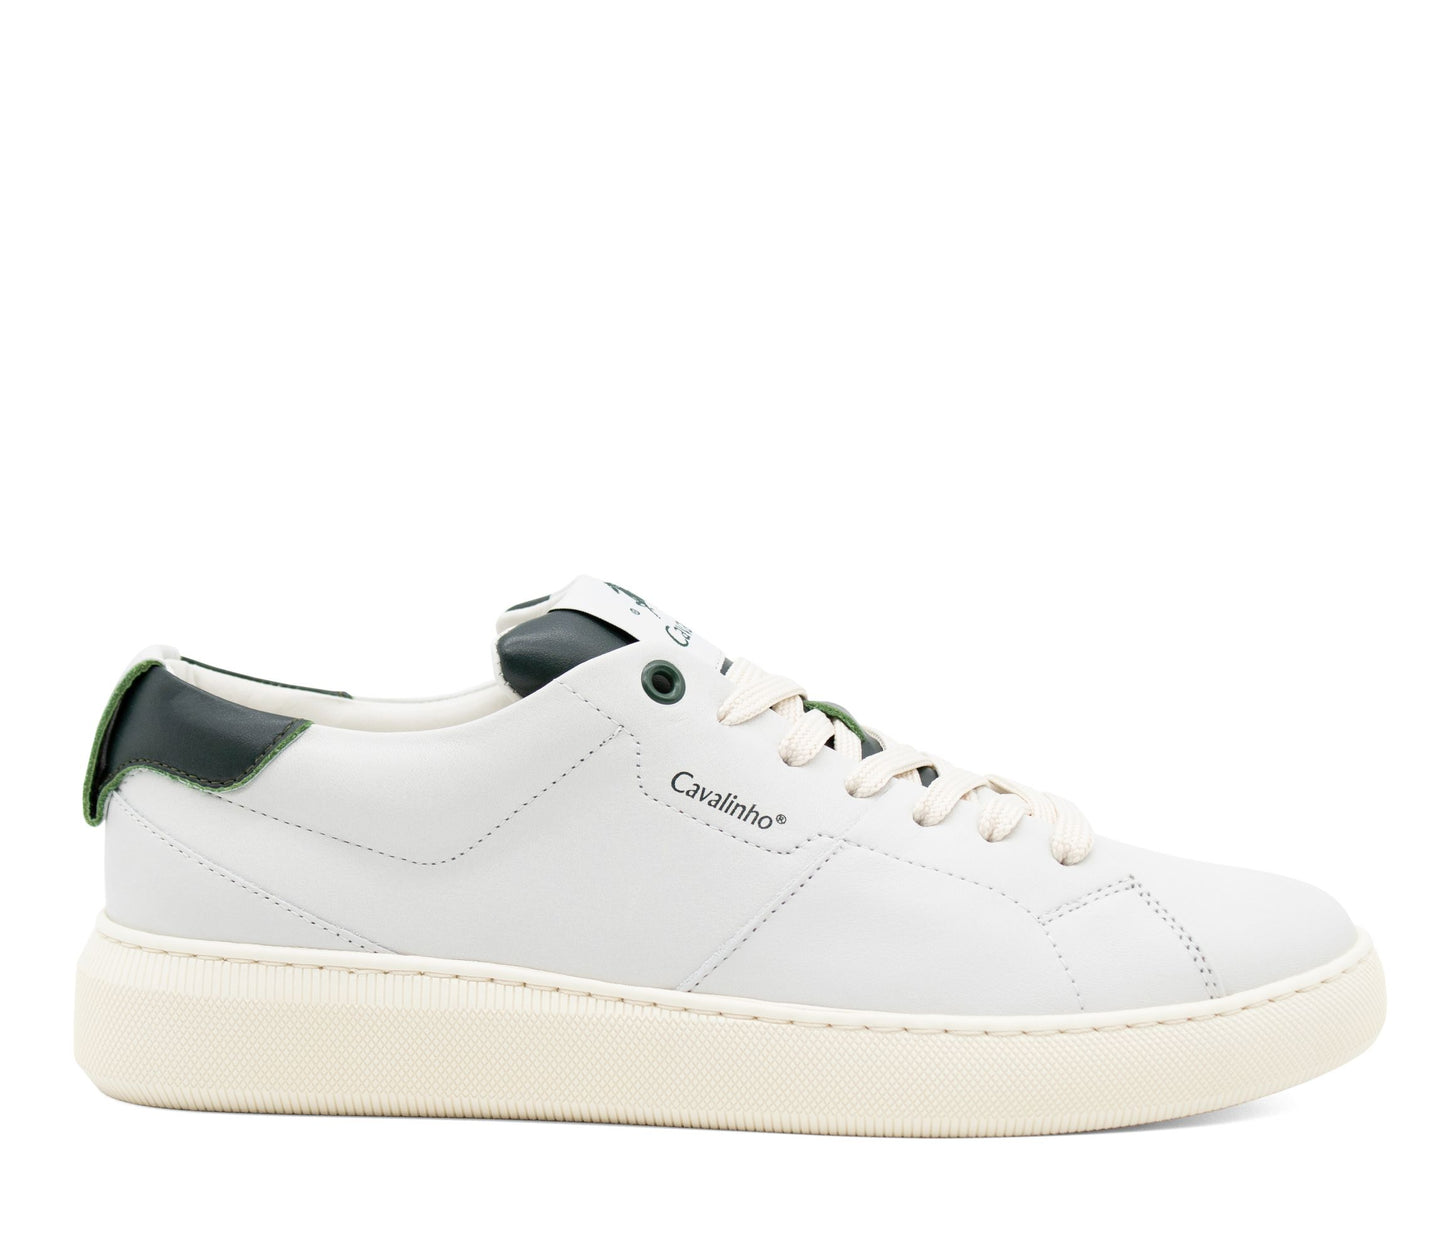 Cavalinho Cavalinho Club Sneakers - Green - 48050002.09_1